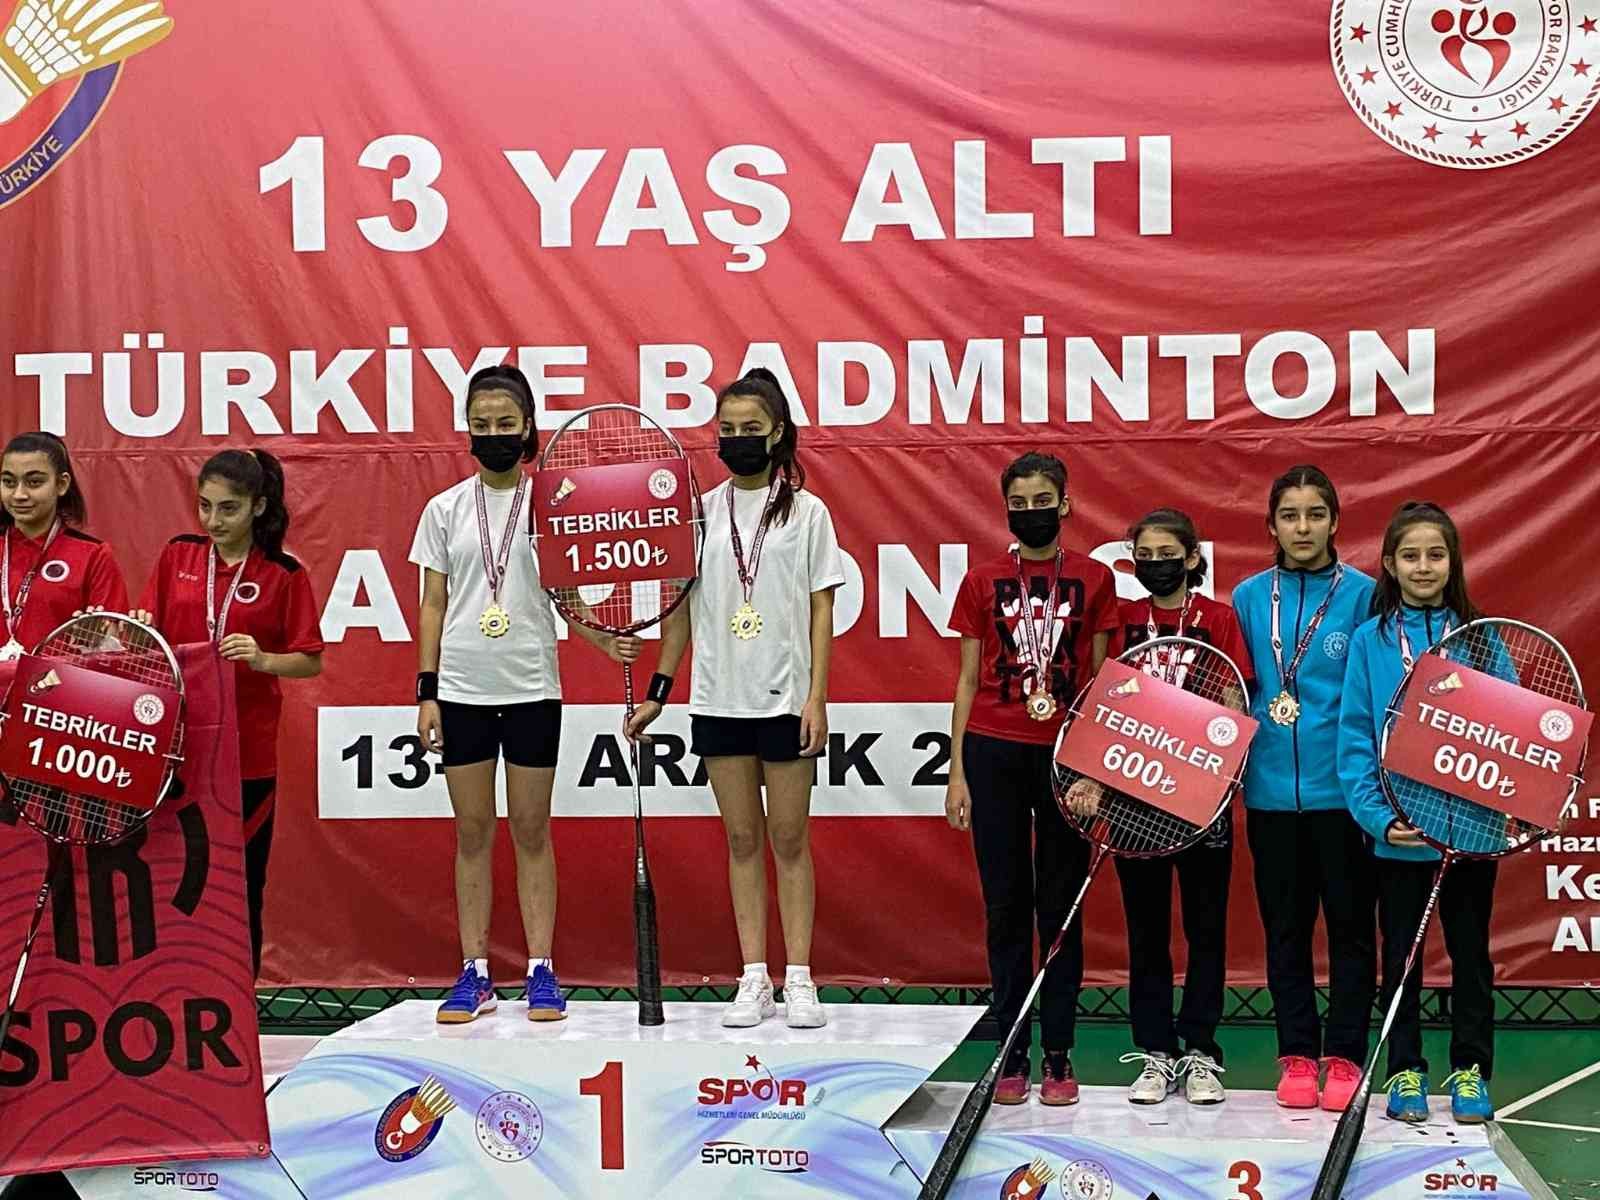 Kayserili sporcular Badminton’da Türkiye üçüncüsü #kayseri